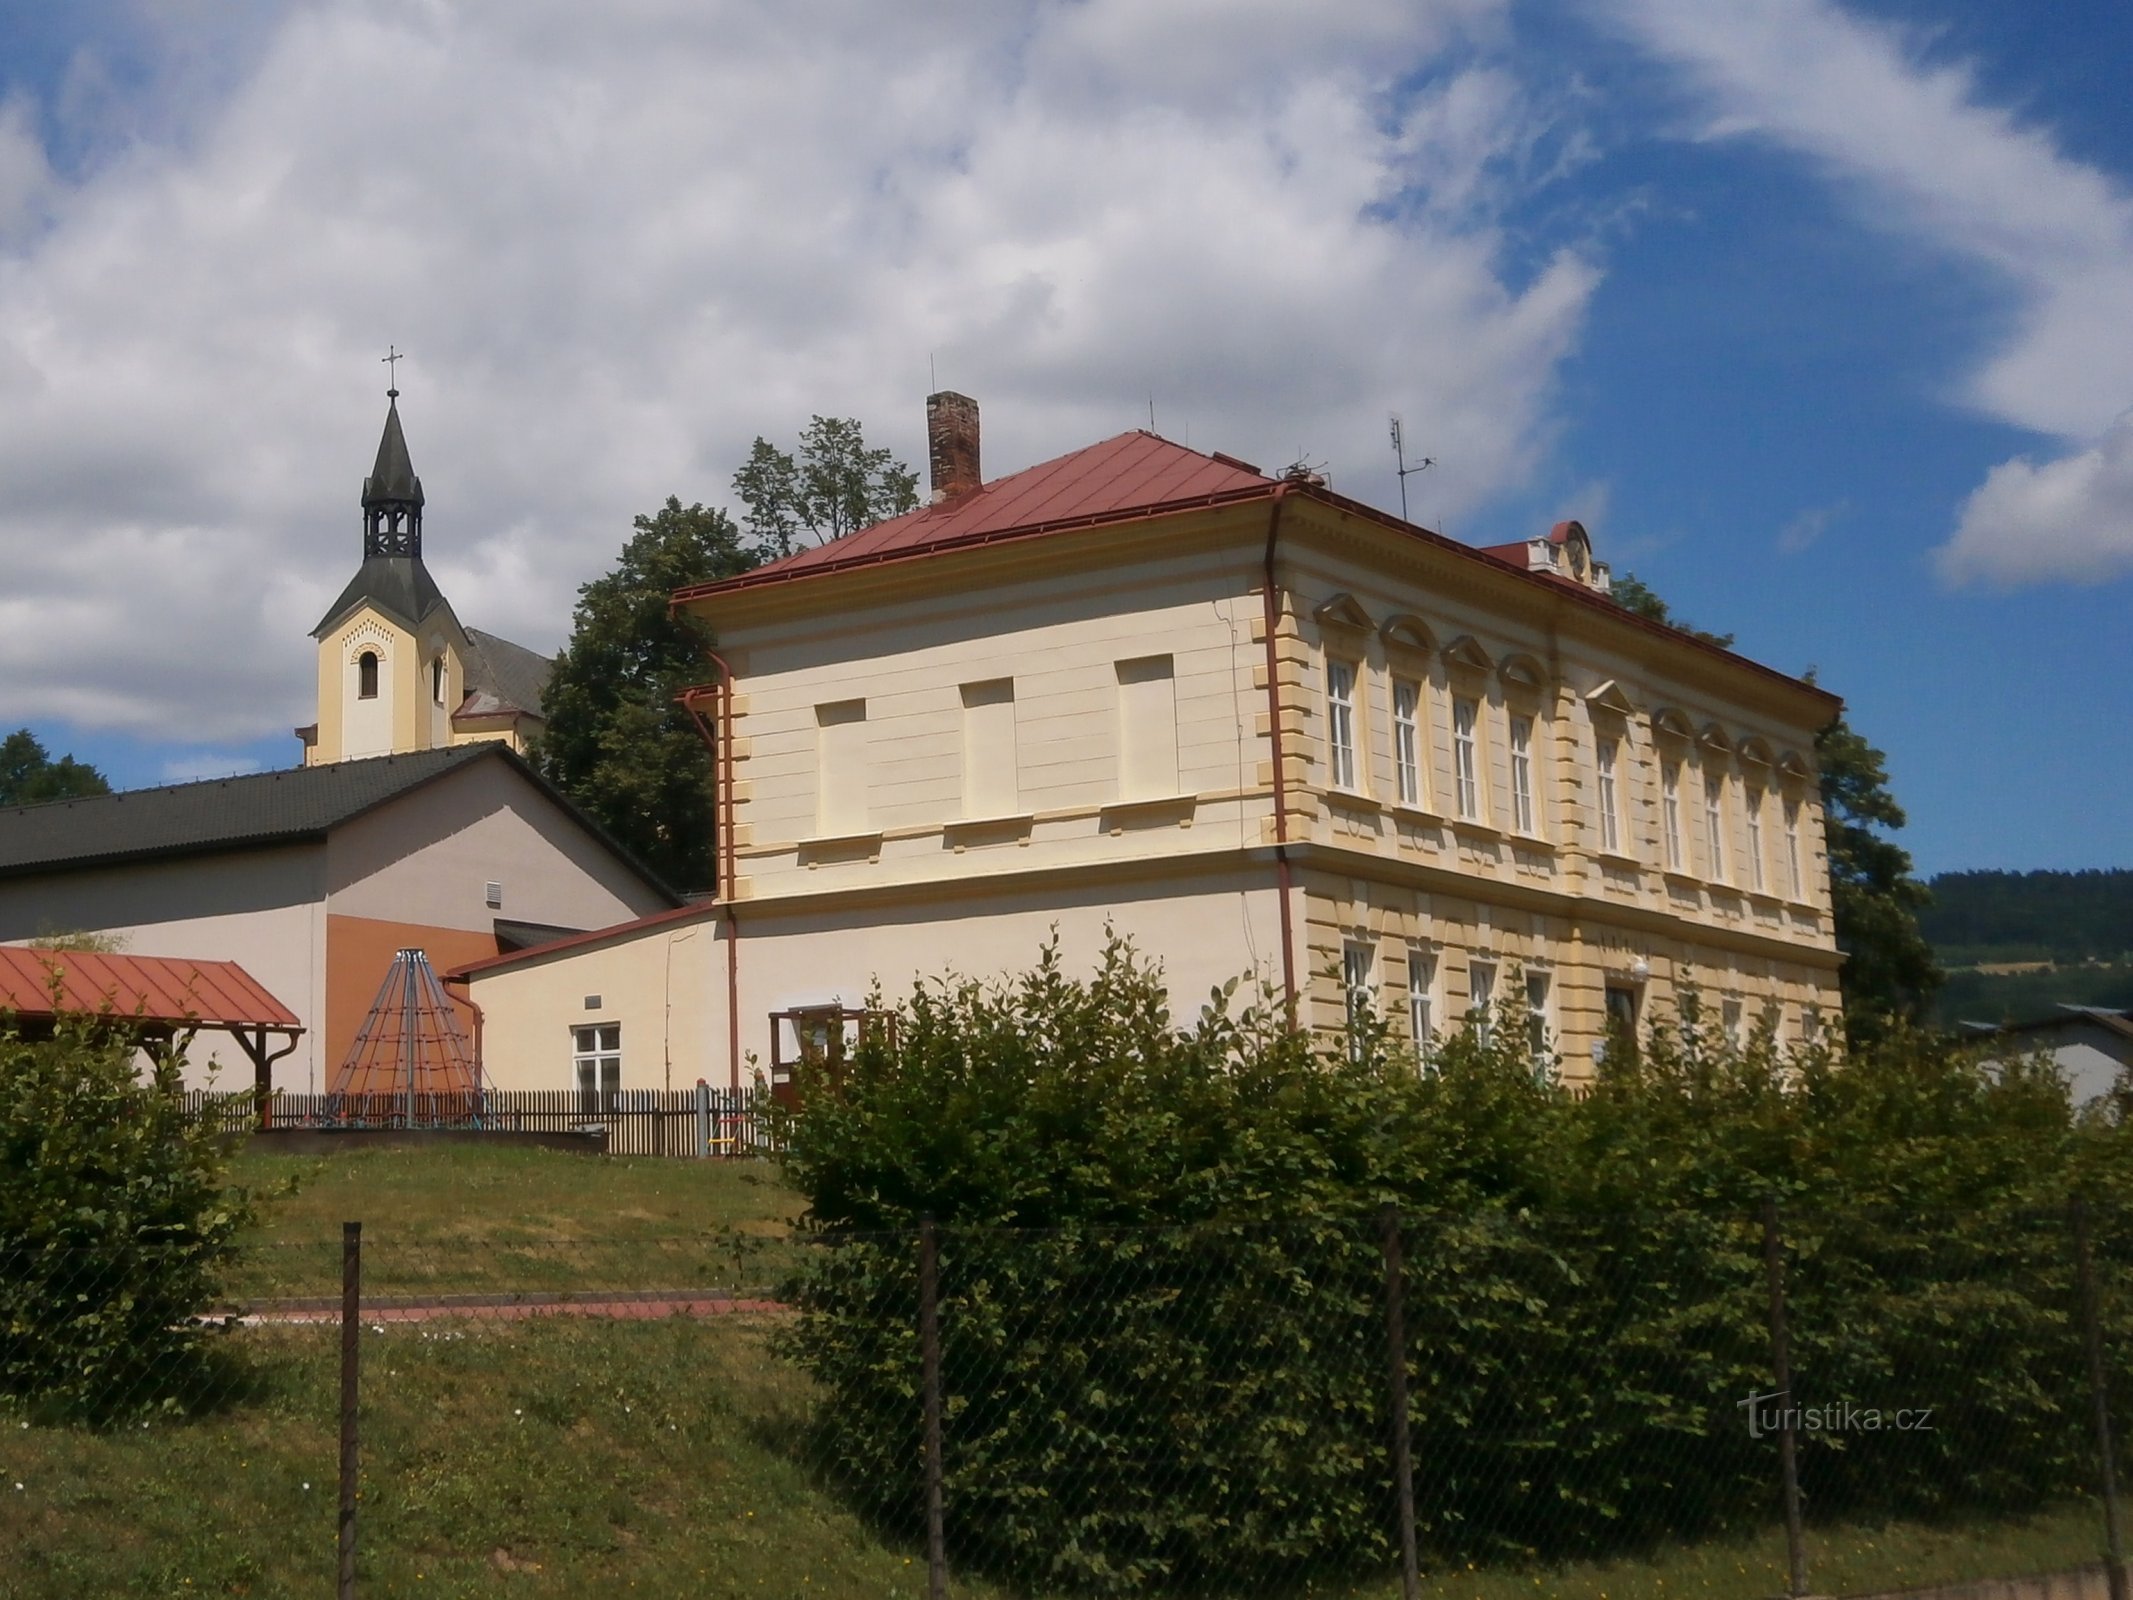 Școală cu o biserică în fundal (Batňovice, 3.7.2017 iulie XNUMX)